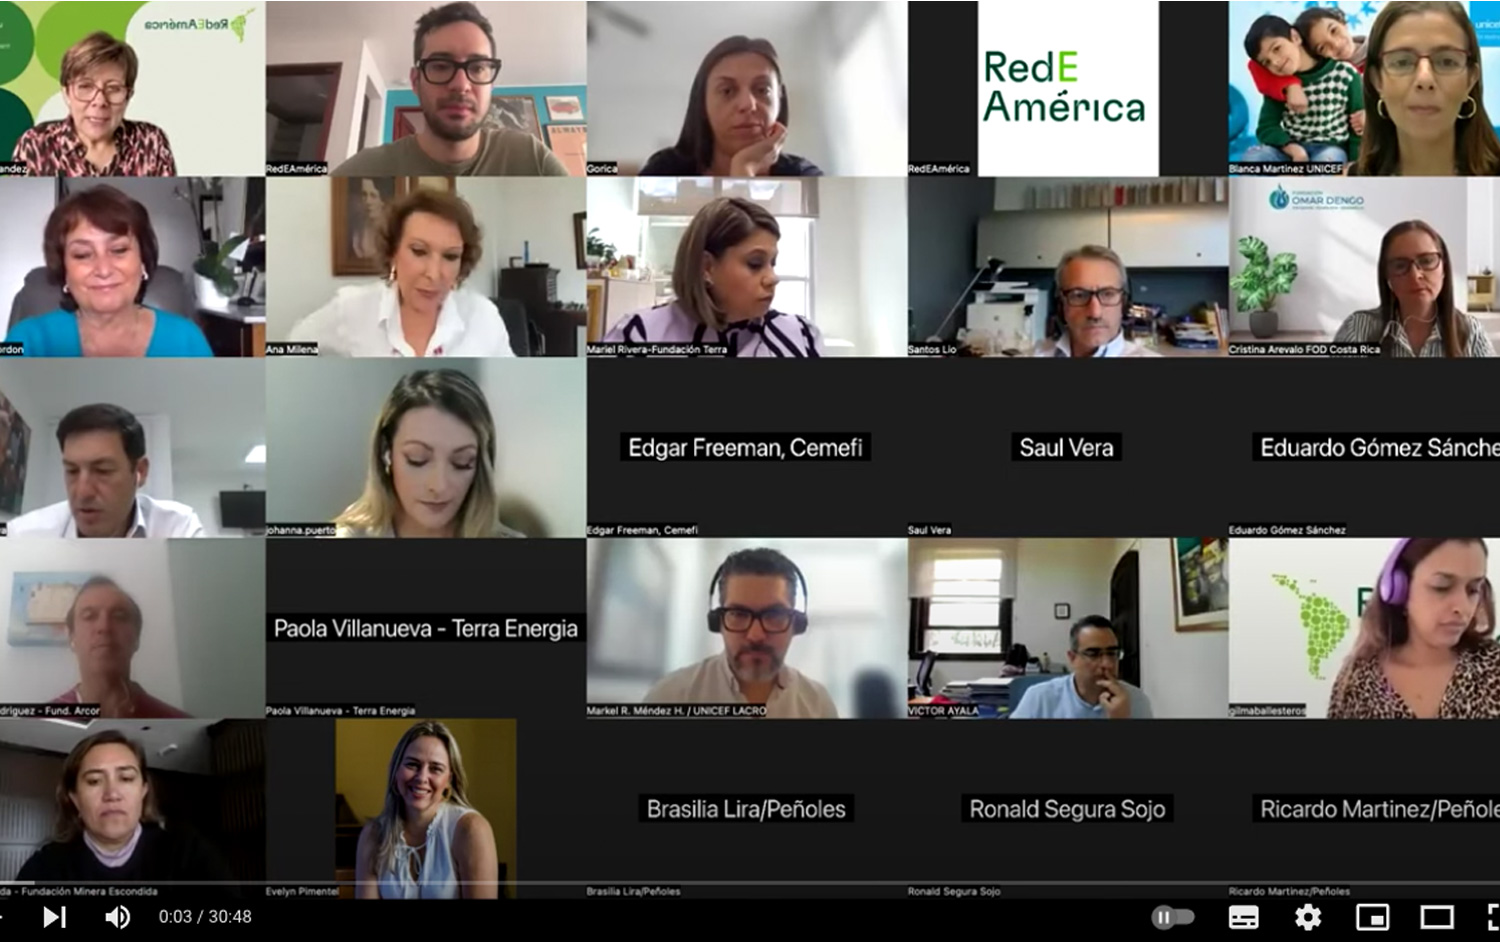 Captura de pantalla de una reunión virtual con participantes en la Plataforma de Formación Virtual de RedEAmérica.